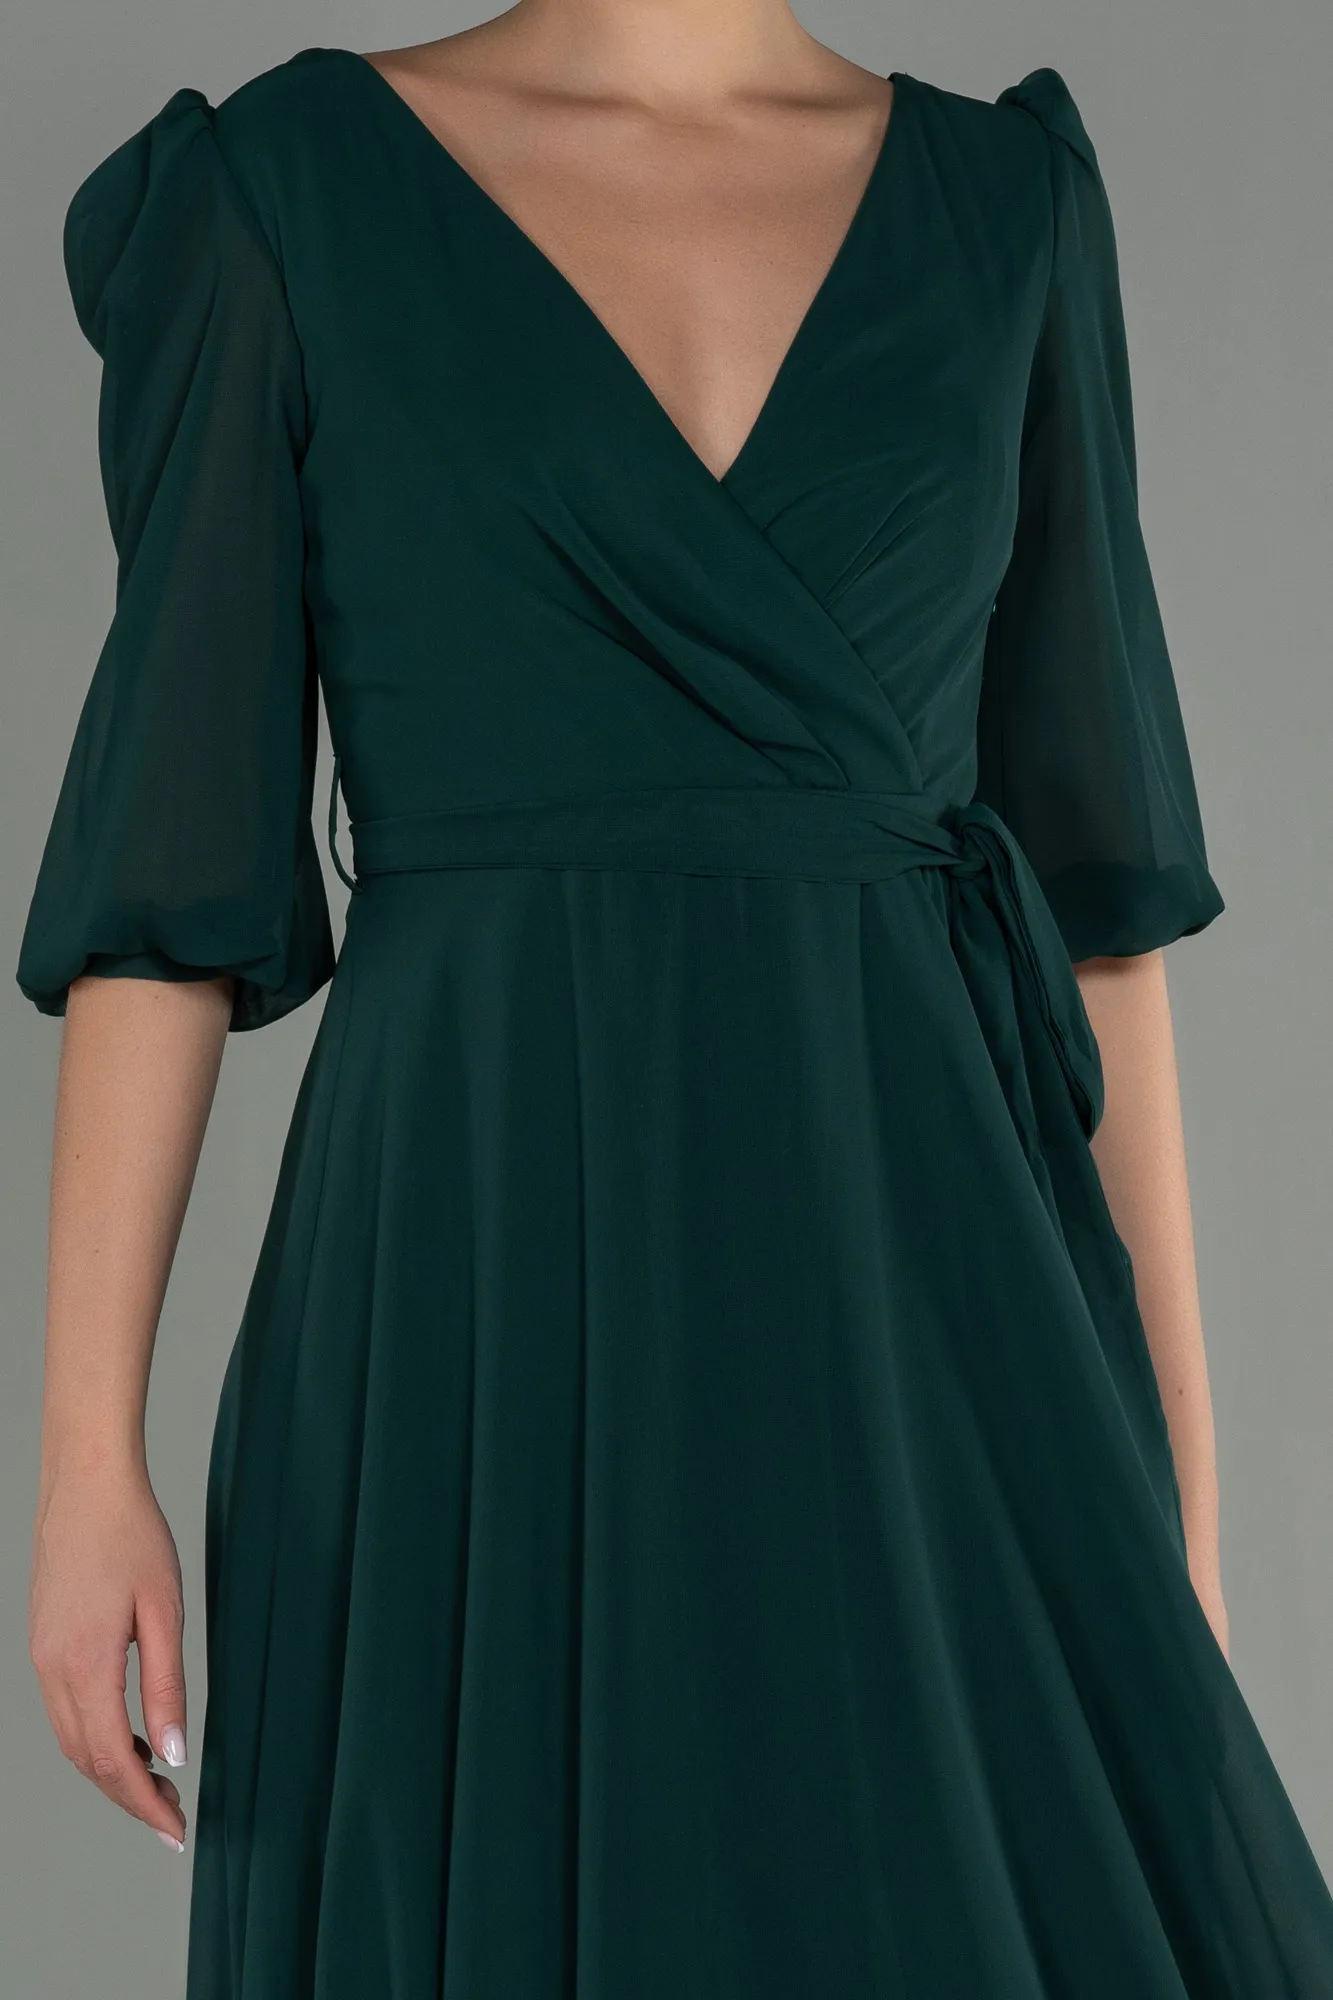 Emerald Green-Long Chiffon Invitation Dress ABU1729